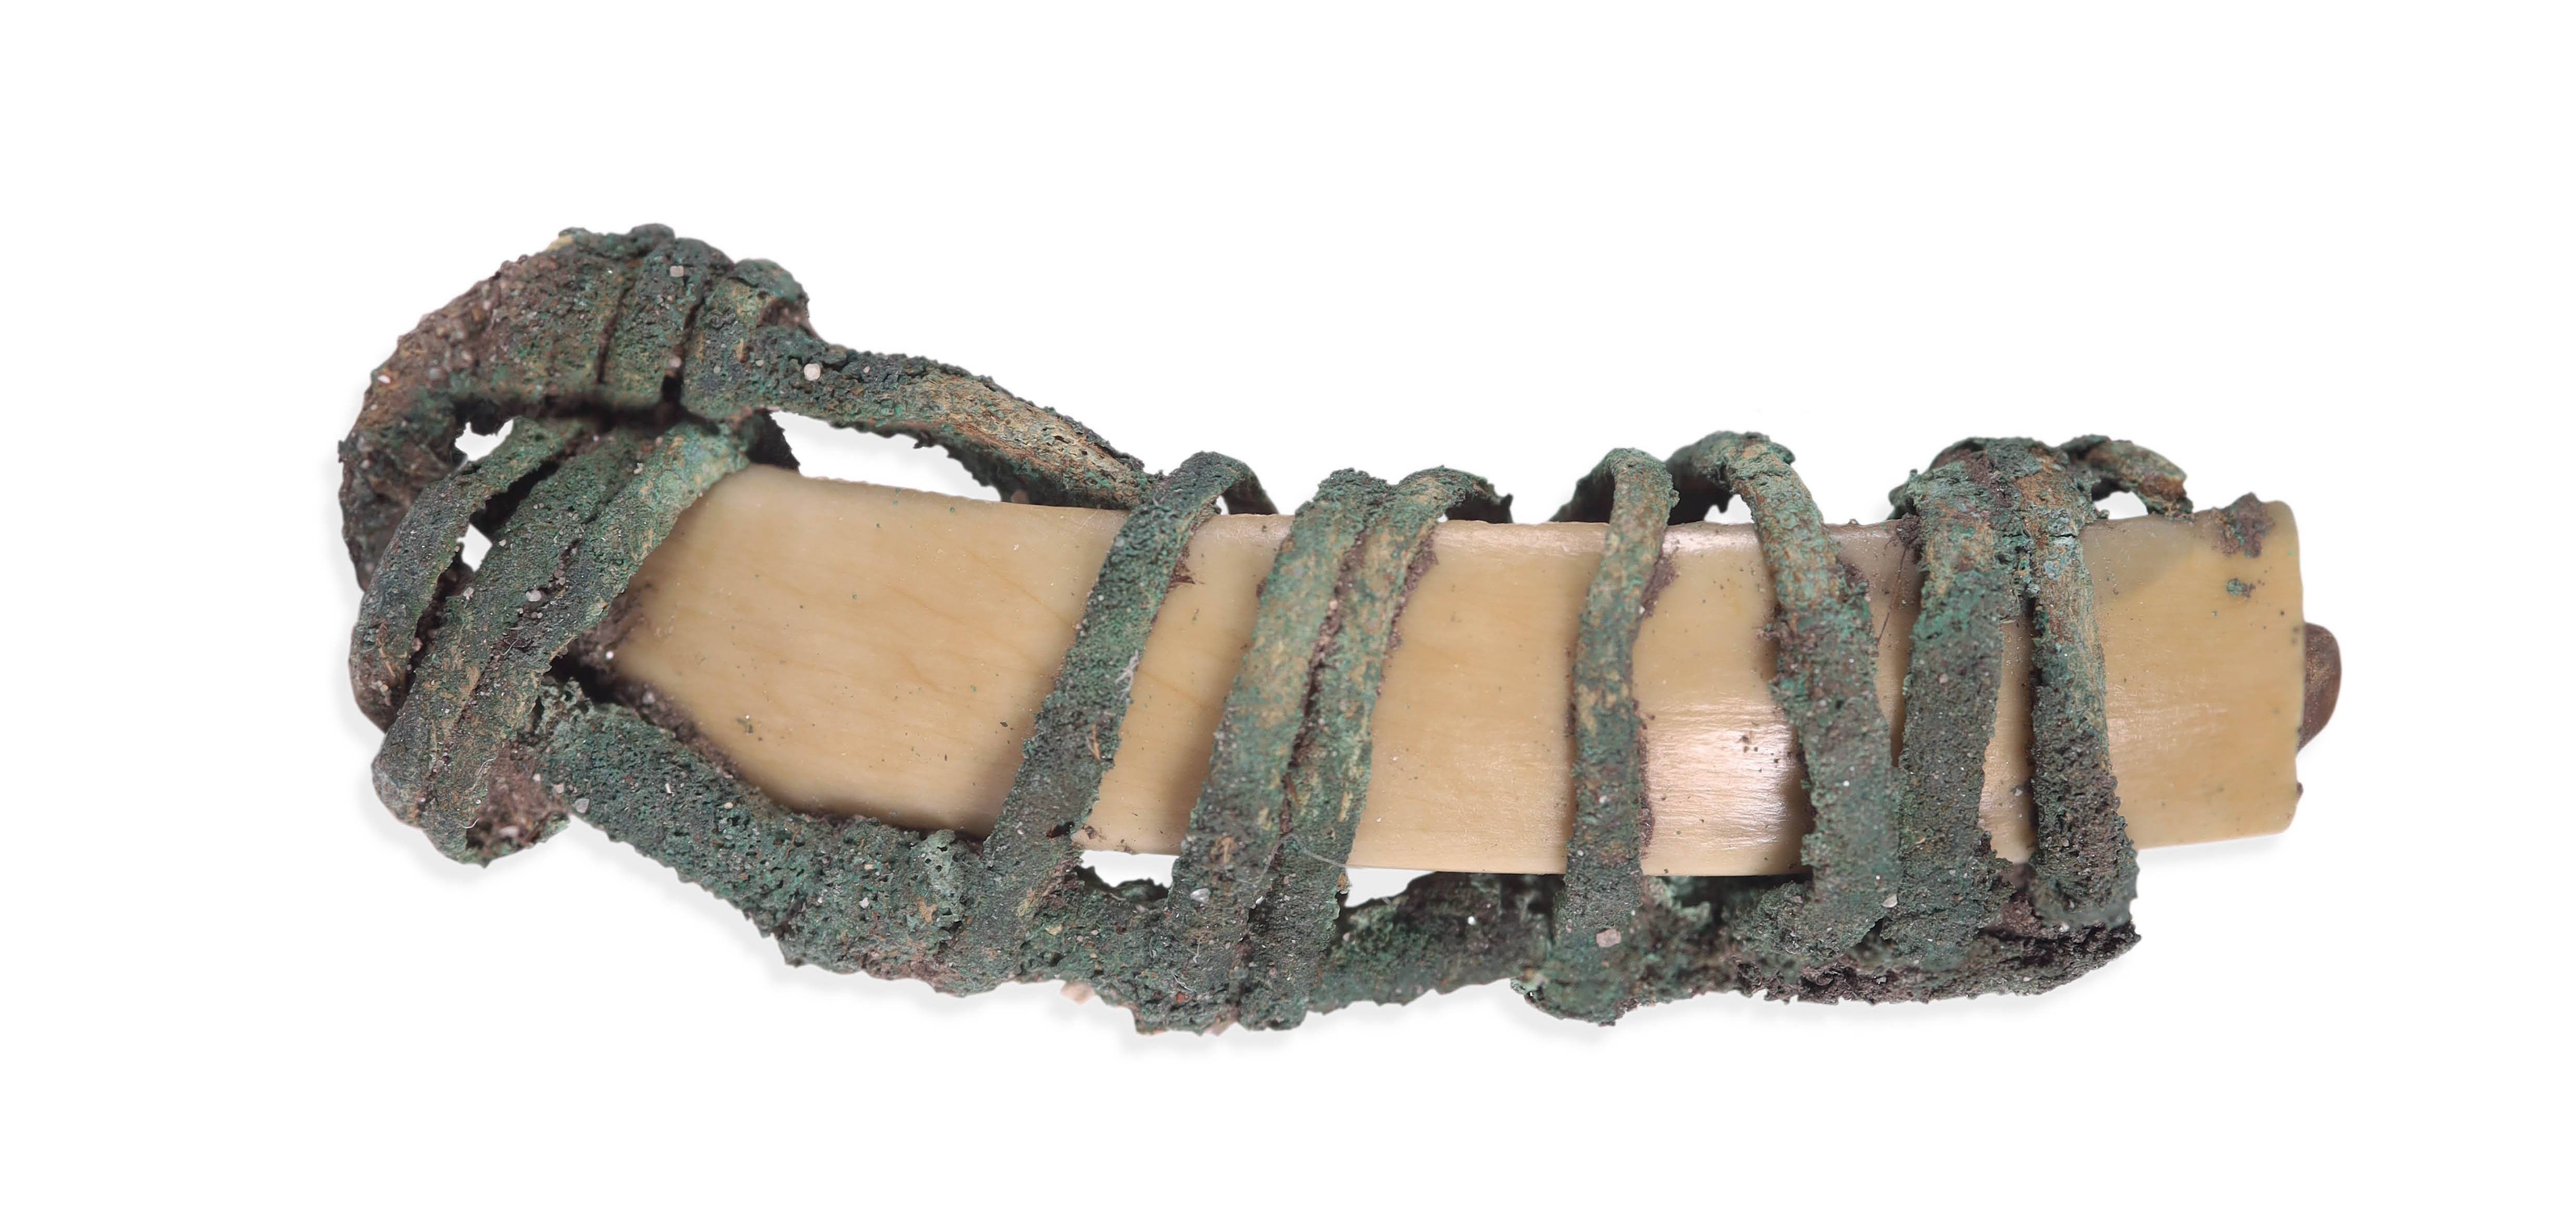 Ця підвіска (знайдена на дні ями) складається з зуба тварини, загорнутого в металеві прикраси.